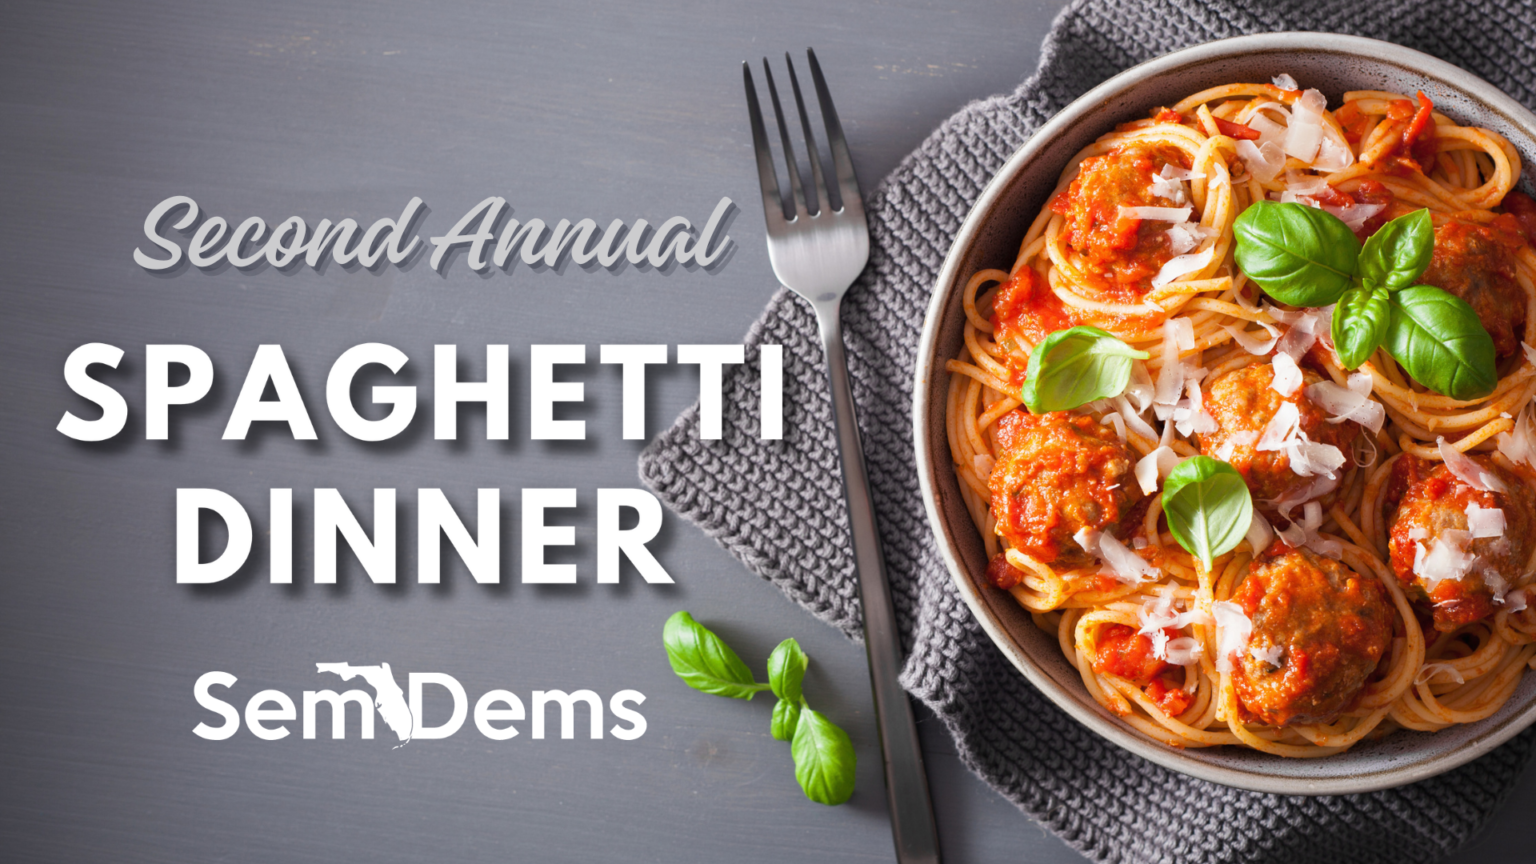 SemDems Spaghetti Dinner